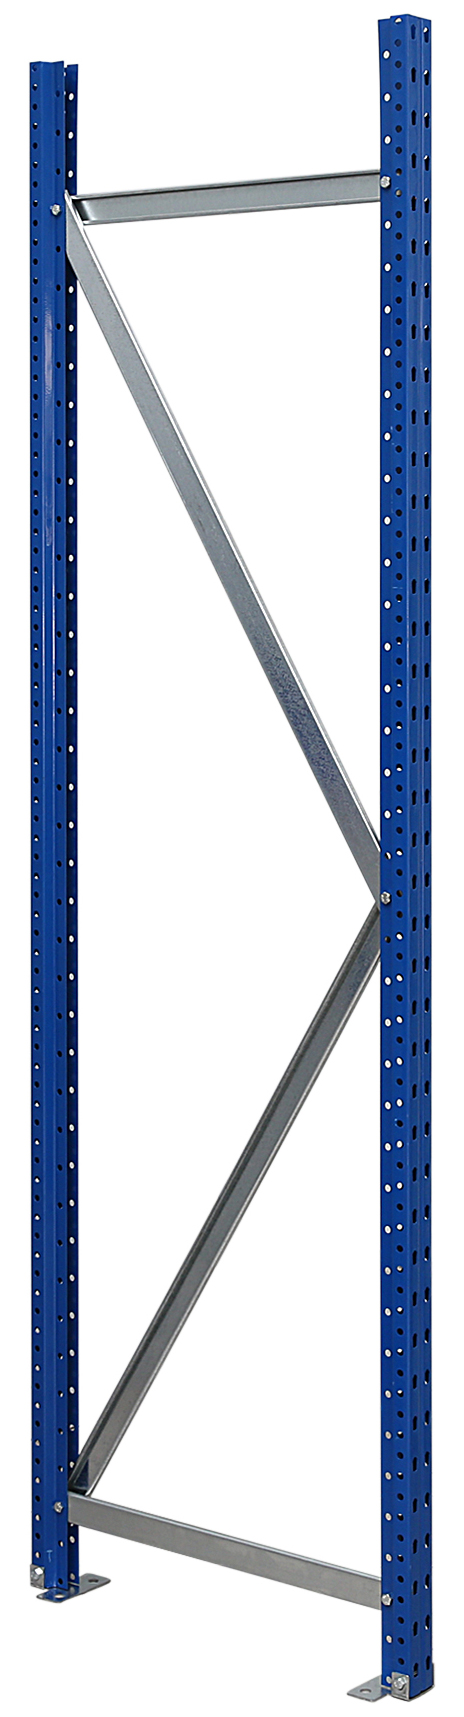 Regalwerk EMMA Weitspannregal Rahmen inkl. Fußplatte (RW-C-B7-81003-K) Bild-01